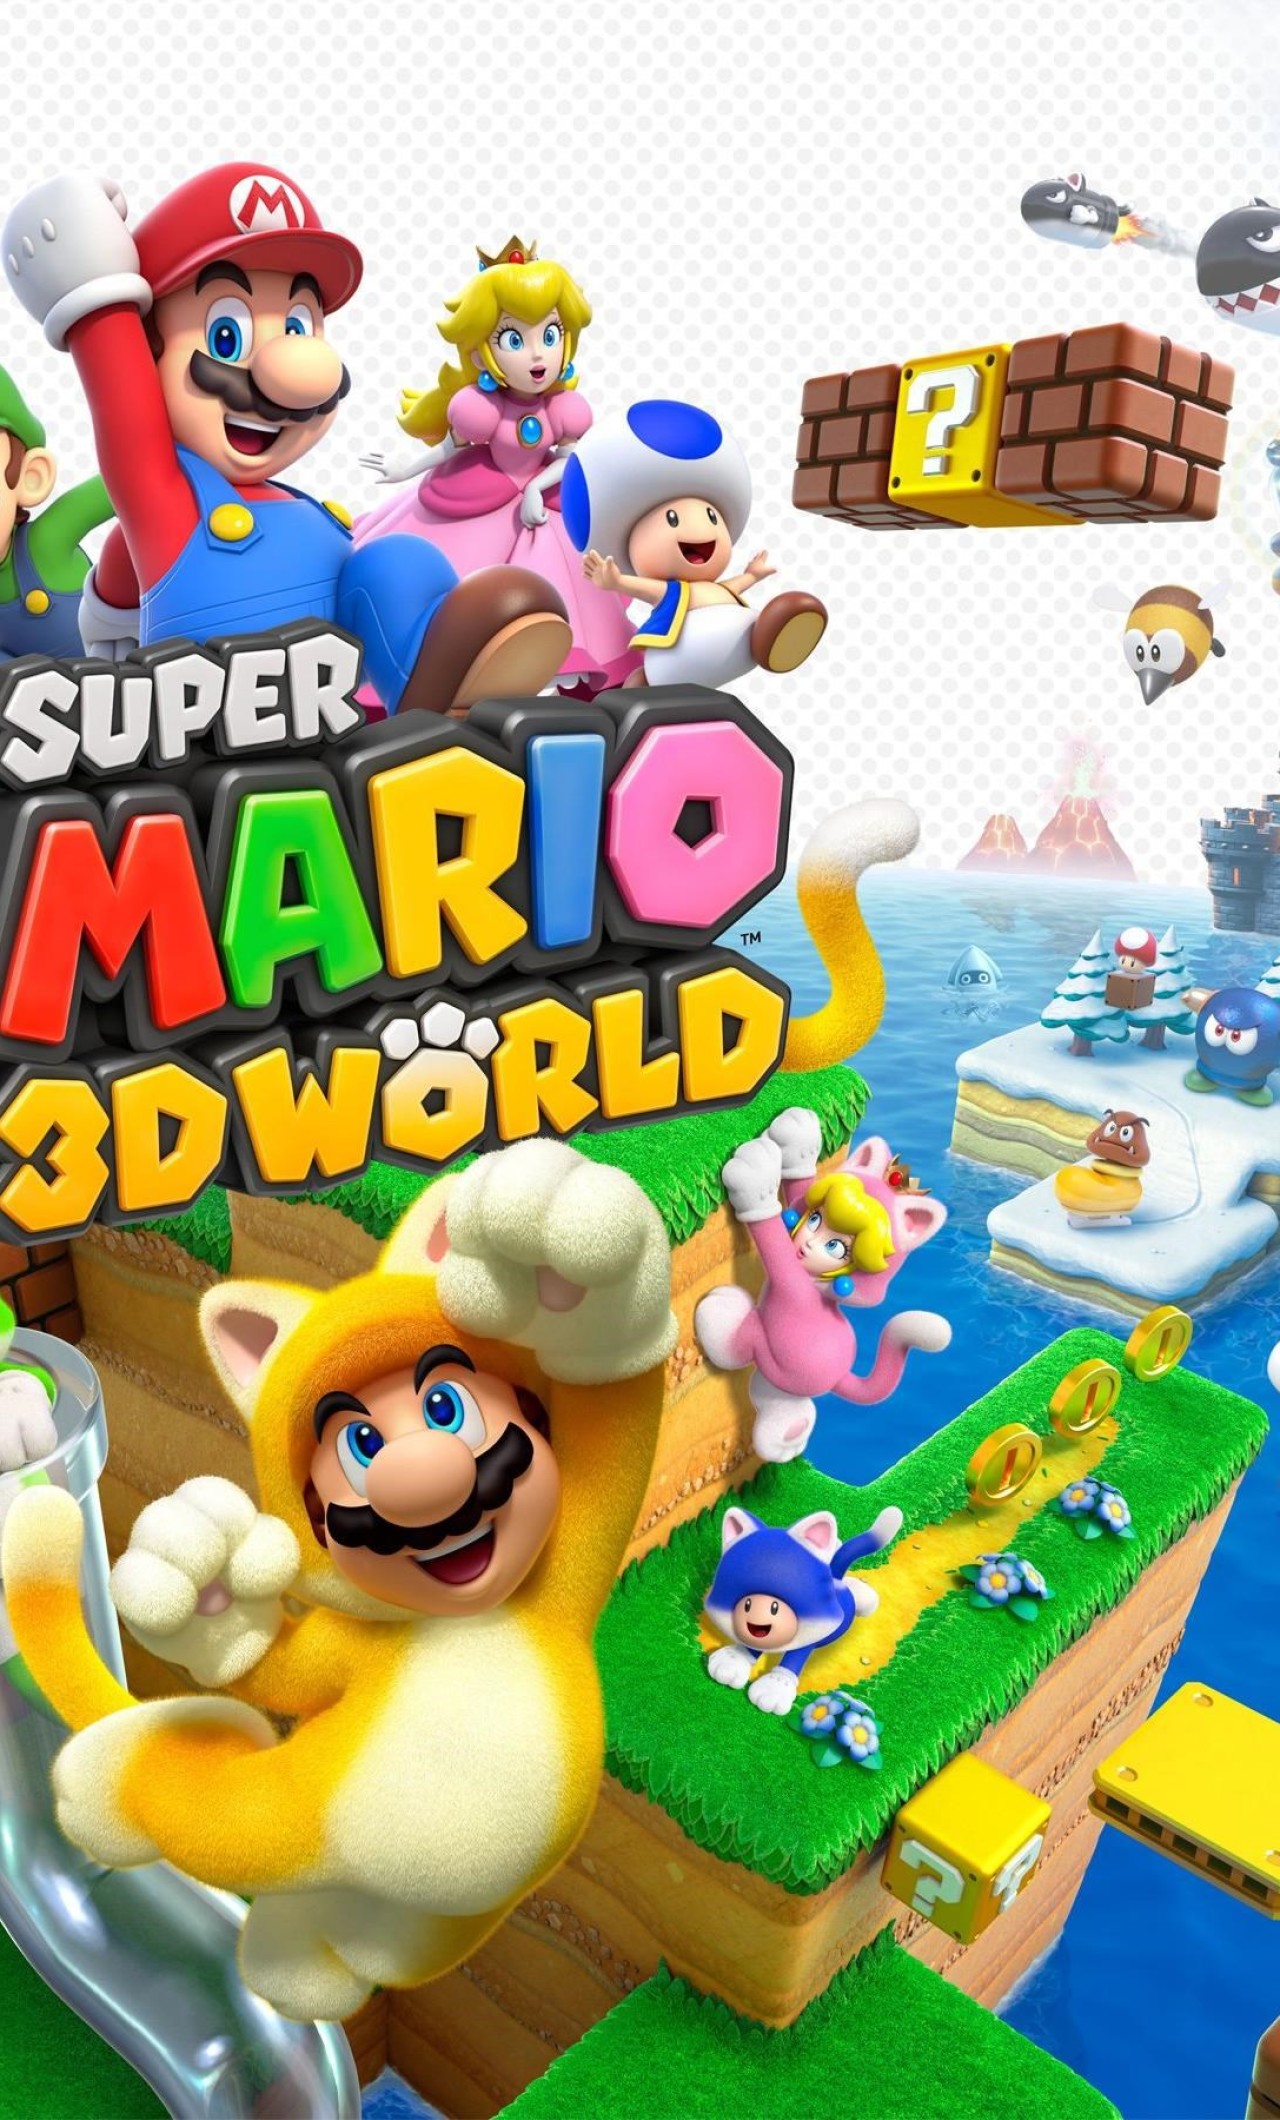 Super Mario Wallpaper Android - 1280x2120 Wallpaper 